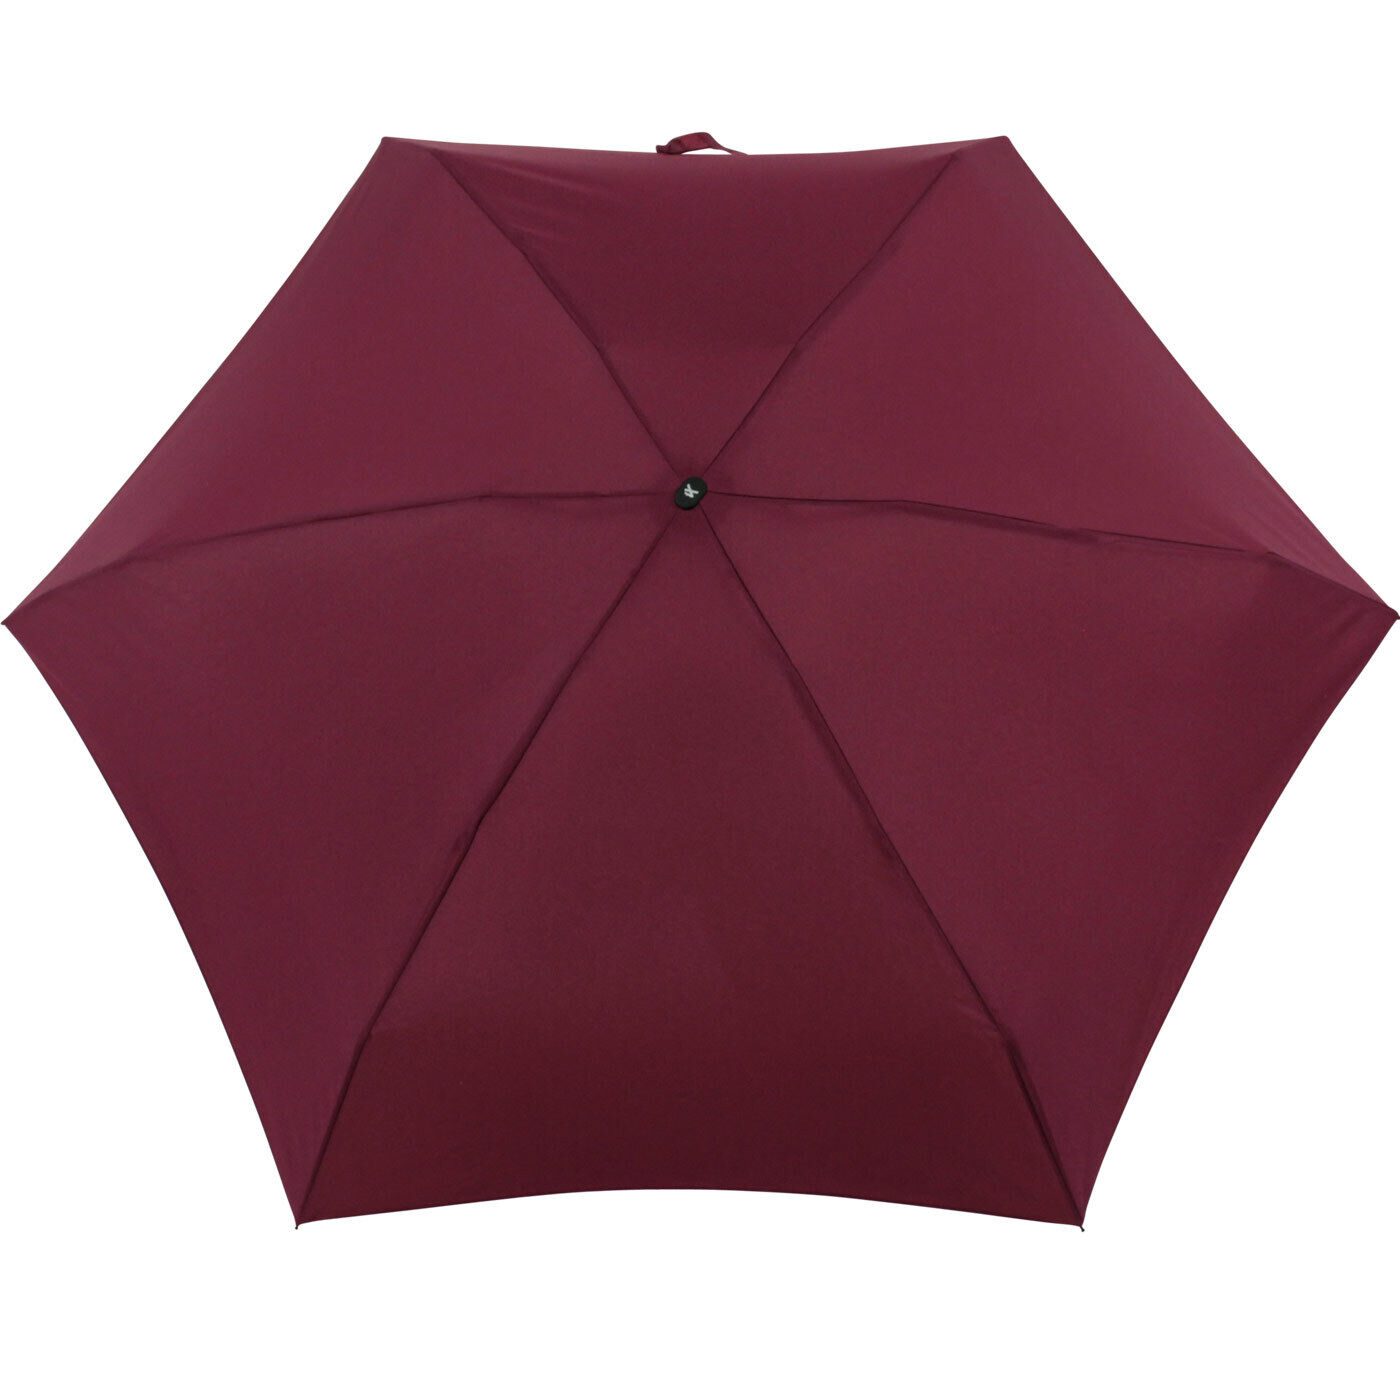 iX-brella Regenschirm Damen Taschenschirm 15cm ultra winzig klein leicht flach